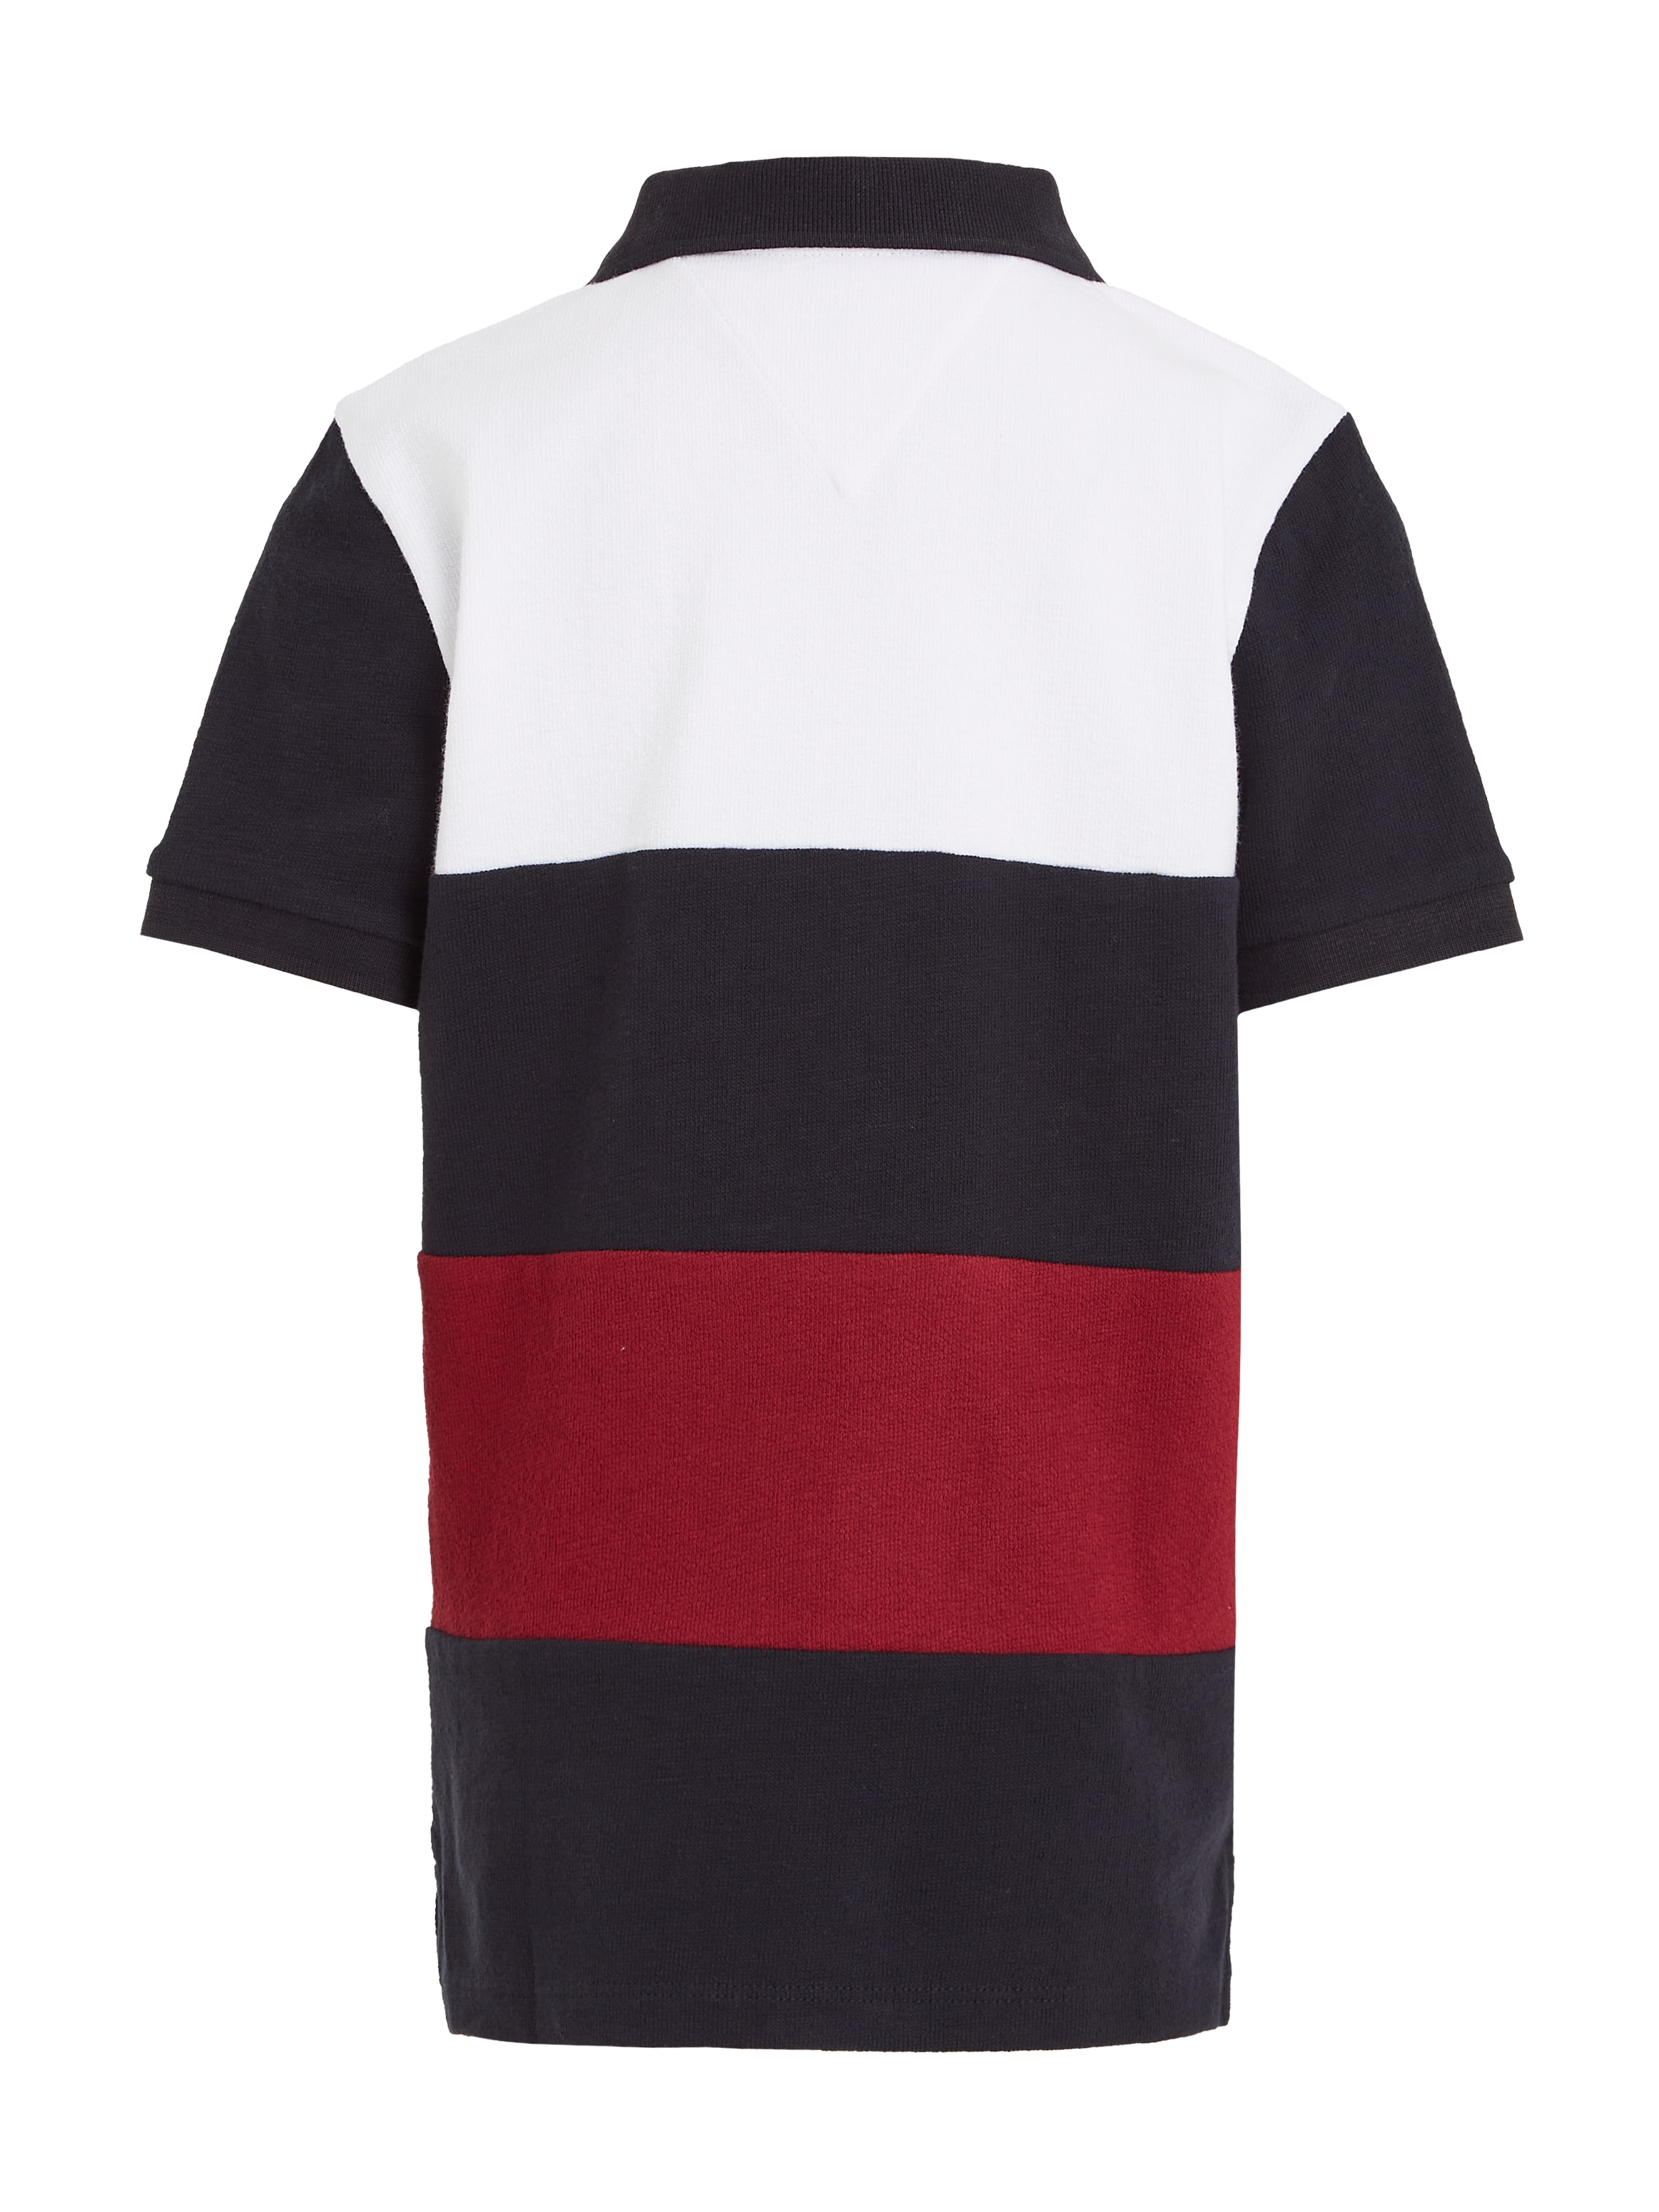 Tommy Hilfiger Poloshirt »CLRBLOCK GLOBAL STRIPE POLO S/S«, mit Streifen in den typischen Hilfiger Farben